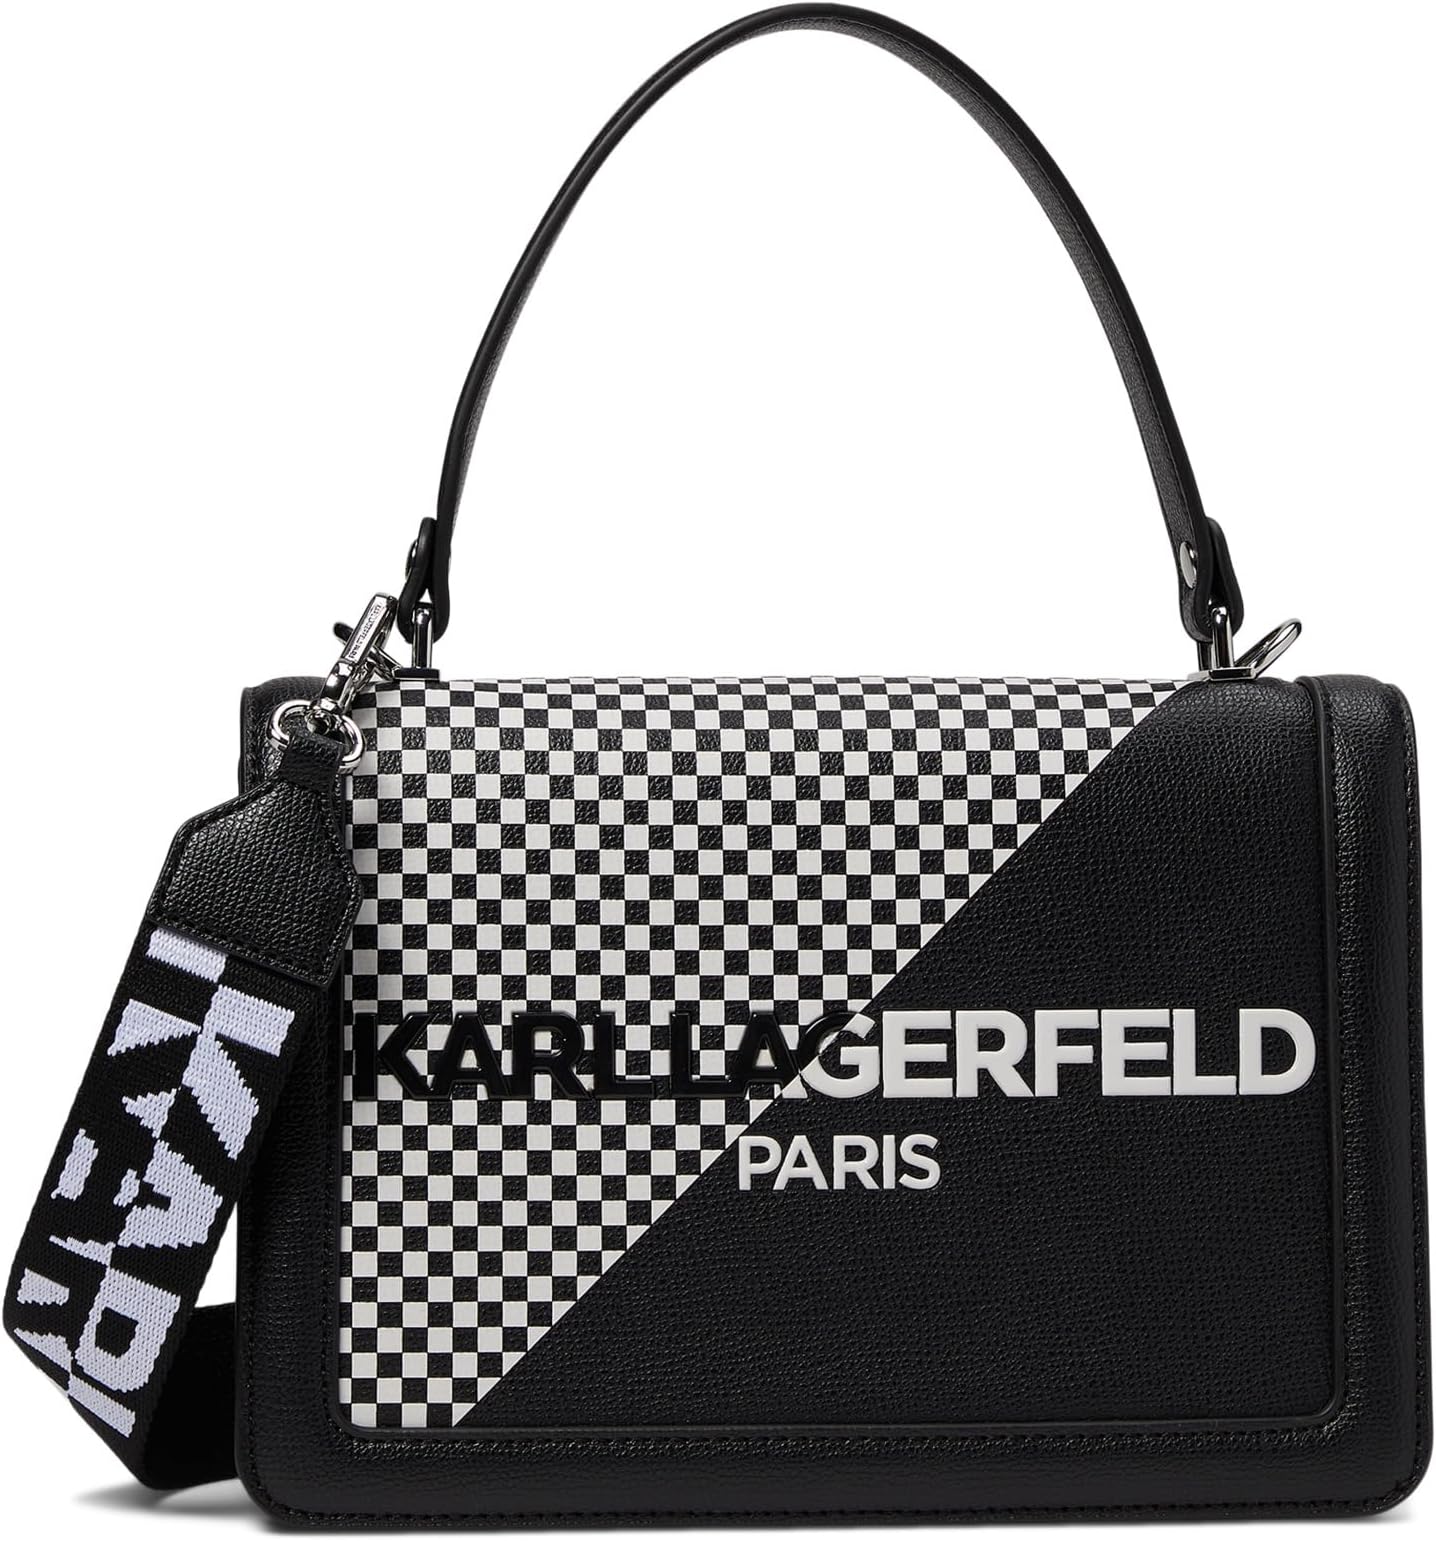 Сумка Simone Front Flap Crossbody Karl Lagerfeld Paris, цвет Black/White/Black форинская сумка karl lagerfeld paris цвет black white